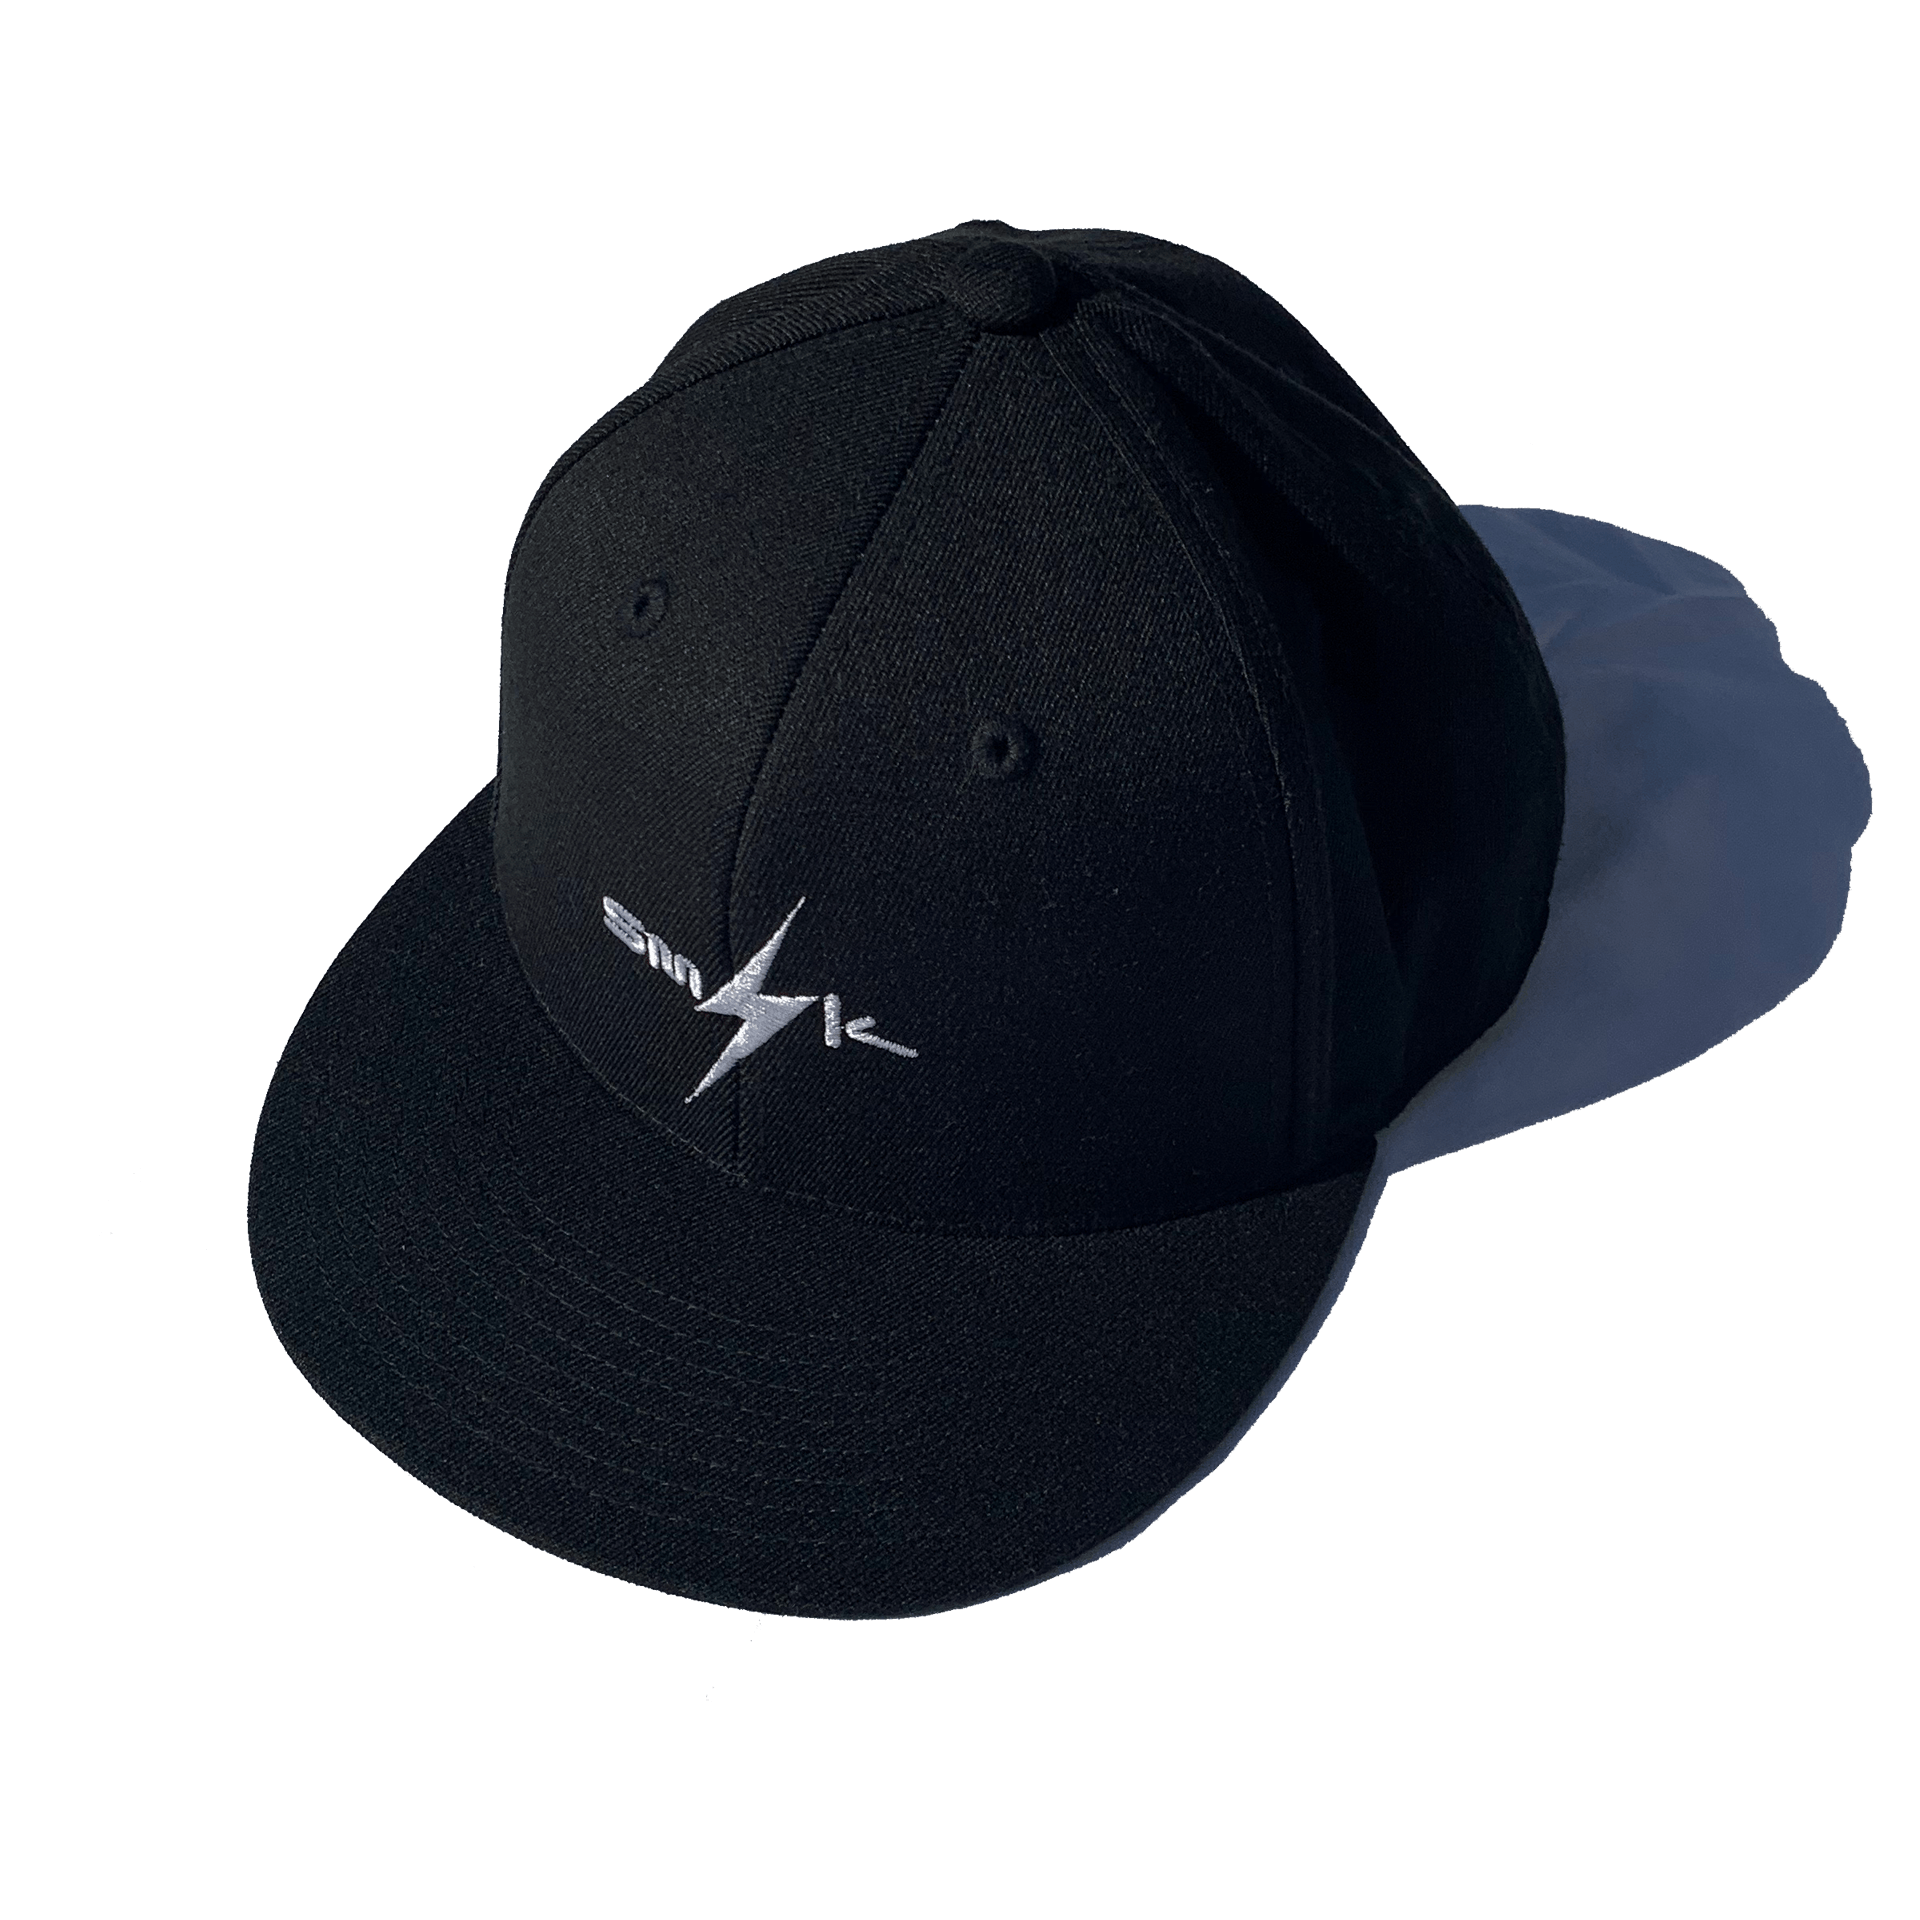 SMIK Flexifit 210 Premium Cap Hat Gorra